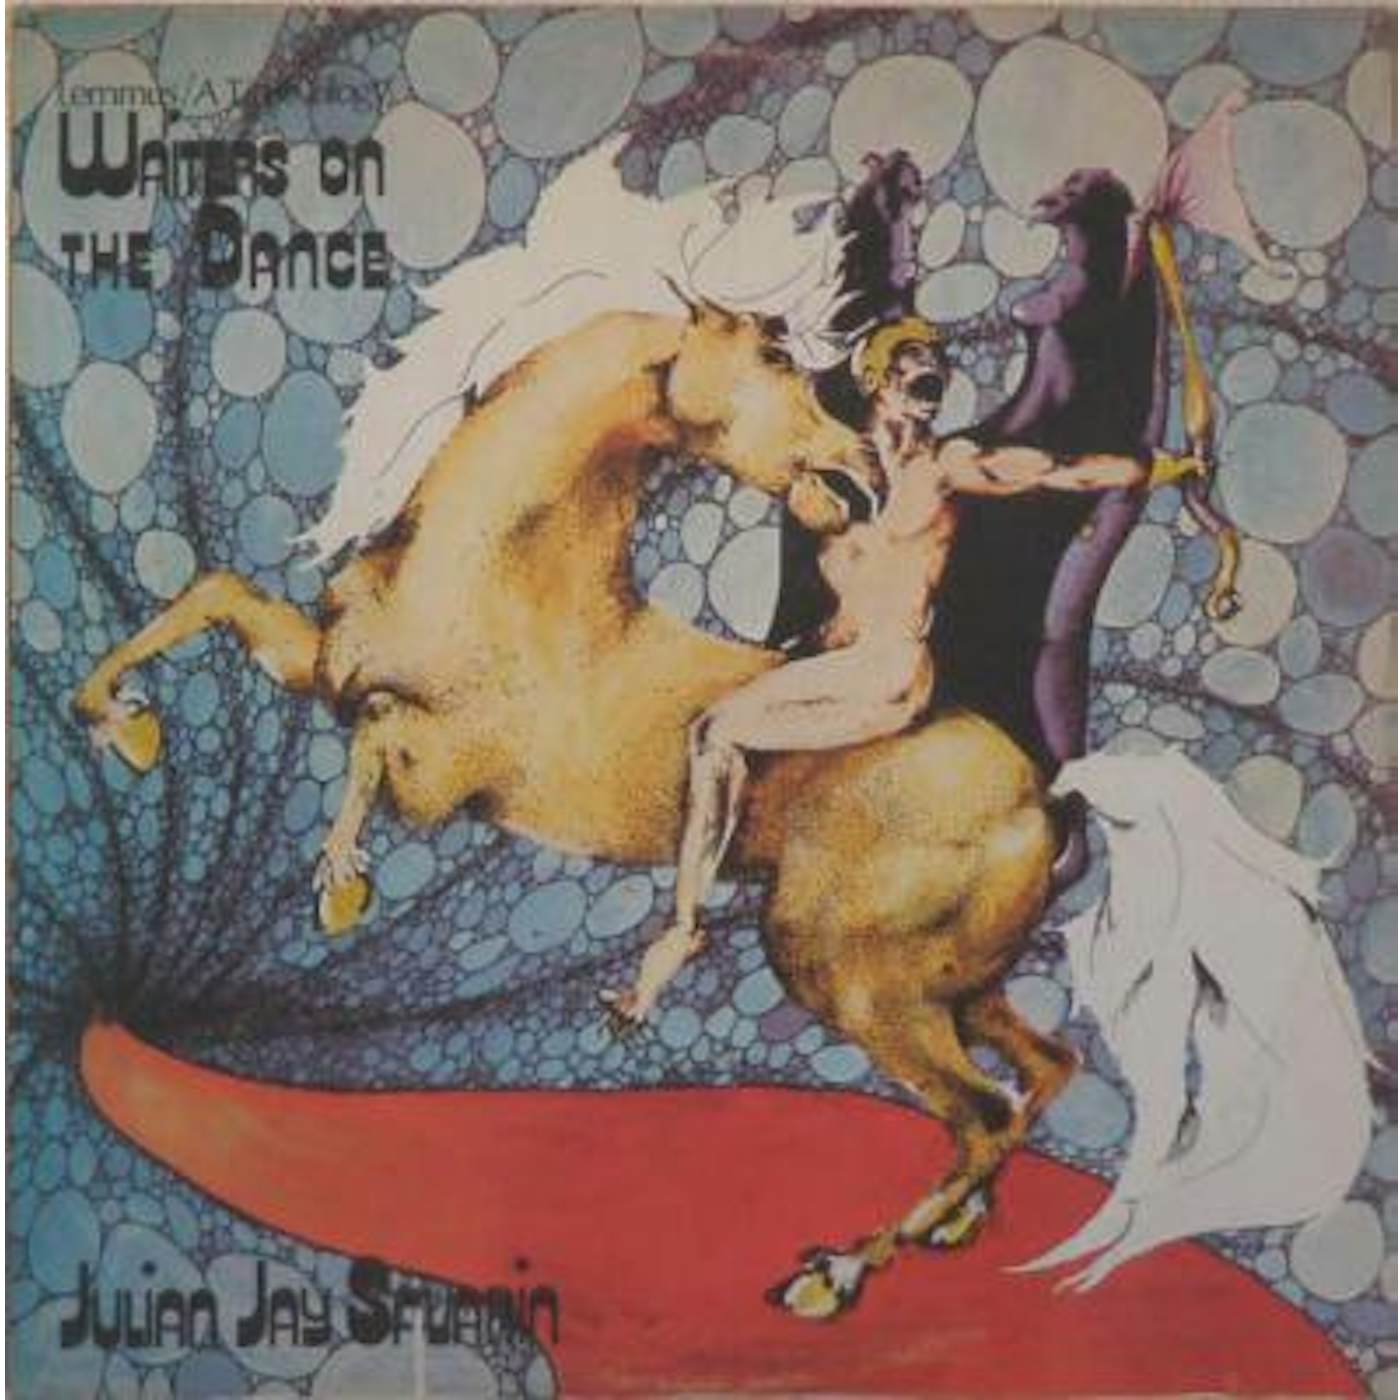 Julian Jay Savarin Waiters On The Dance Vinyl Record